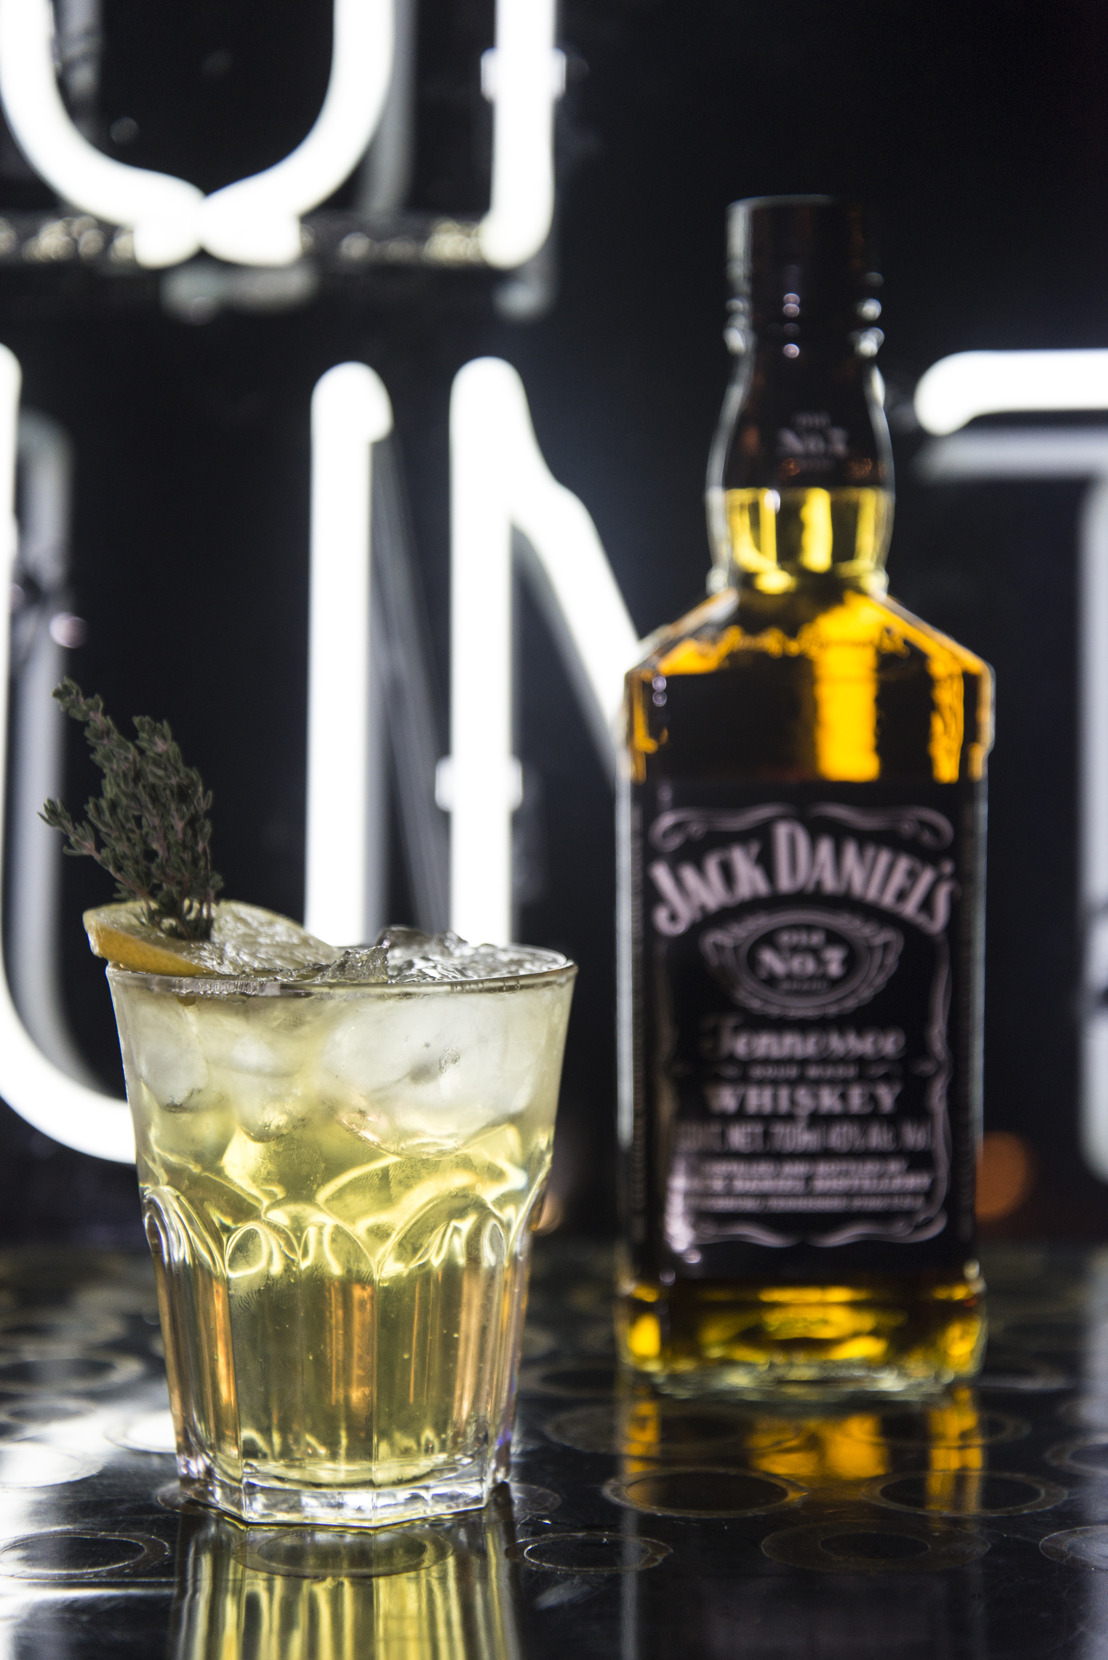 Jack Daniel’s crea una experiencia gourmet inspirada en su nueva campaña: “Cada Gota Cuenta”